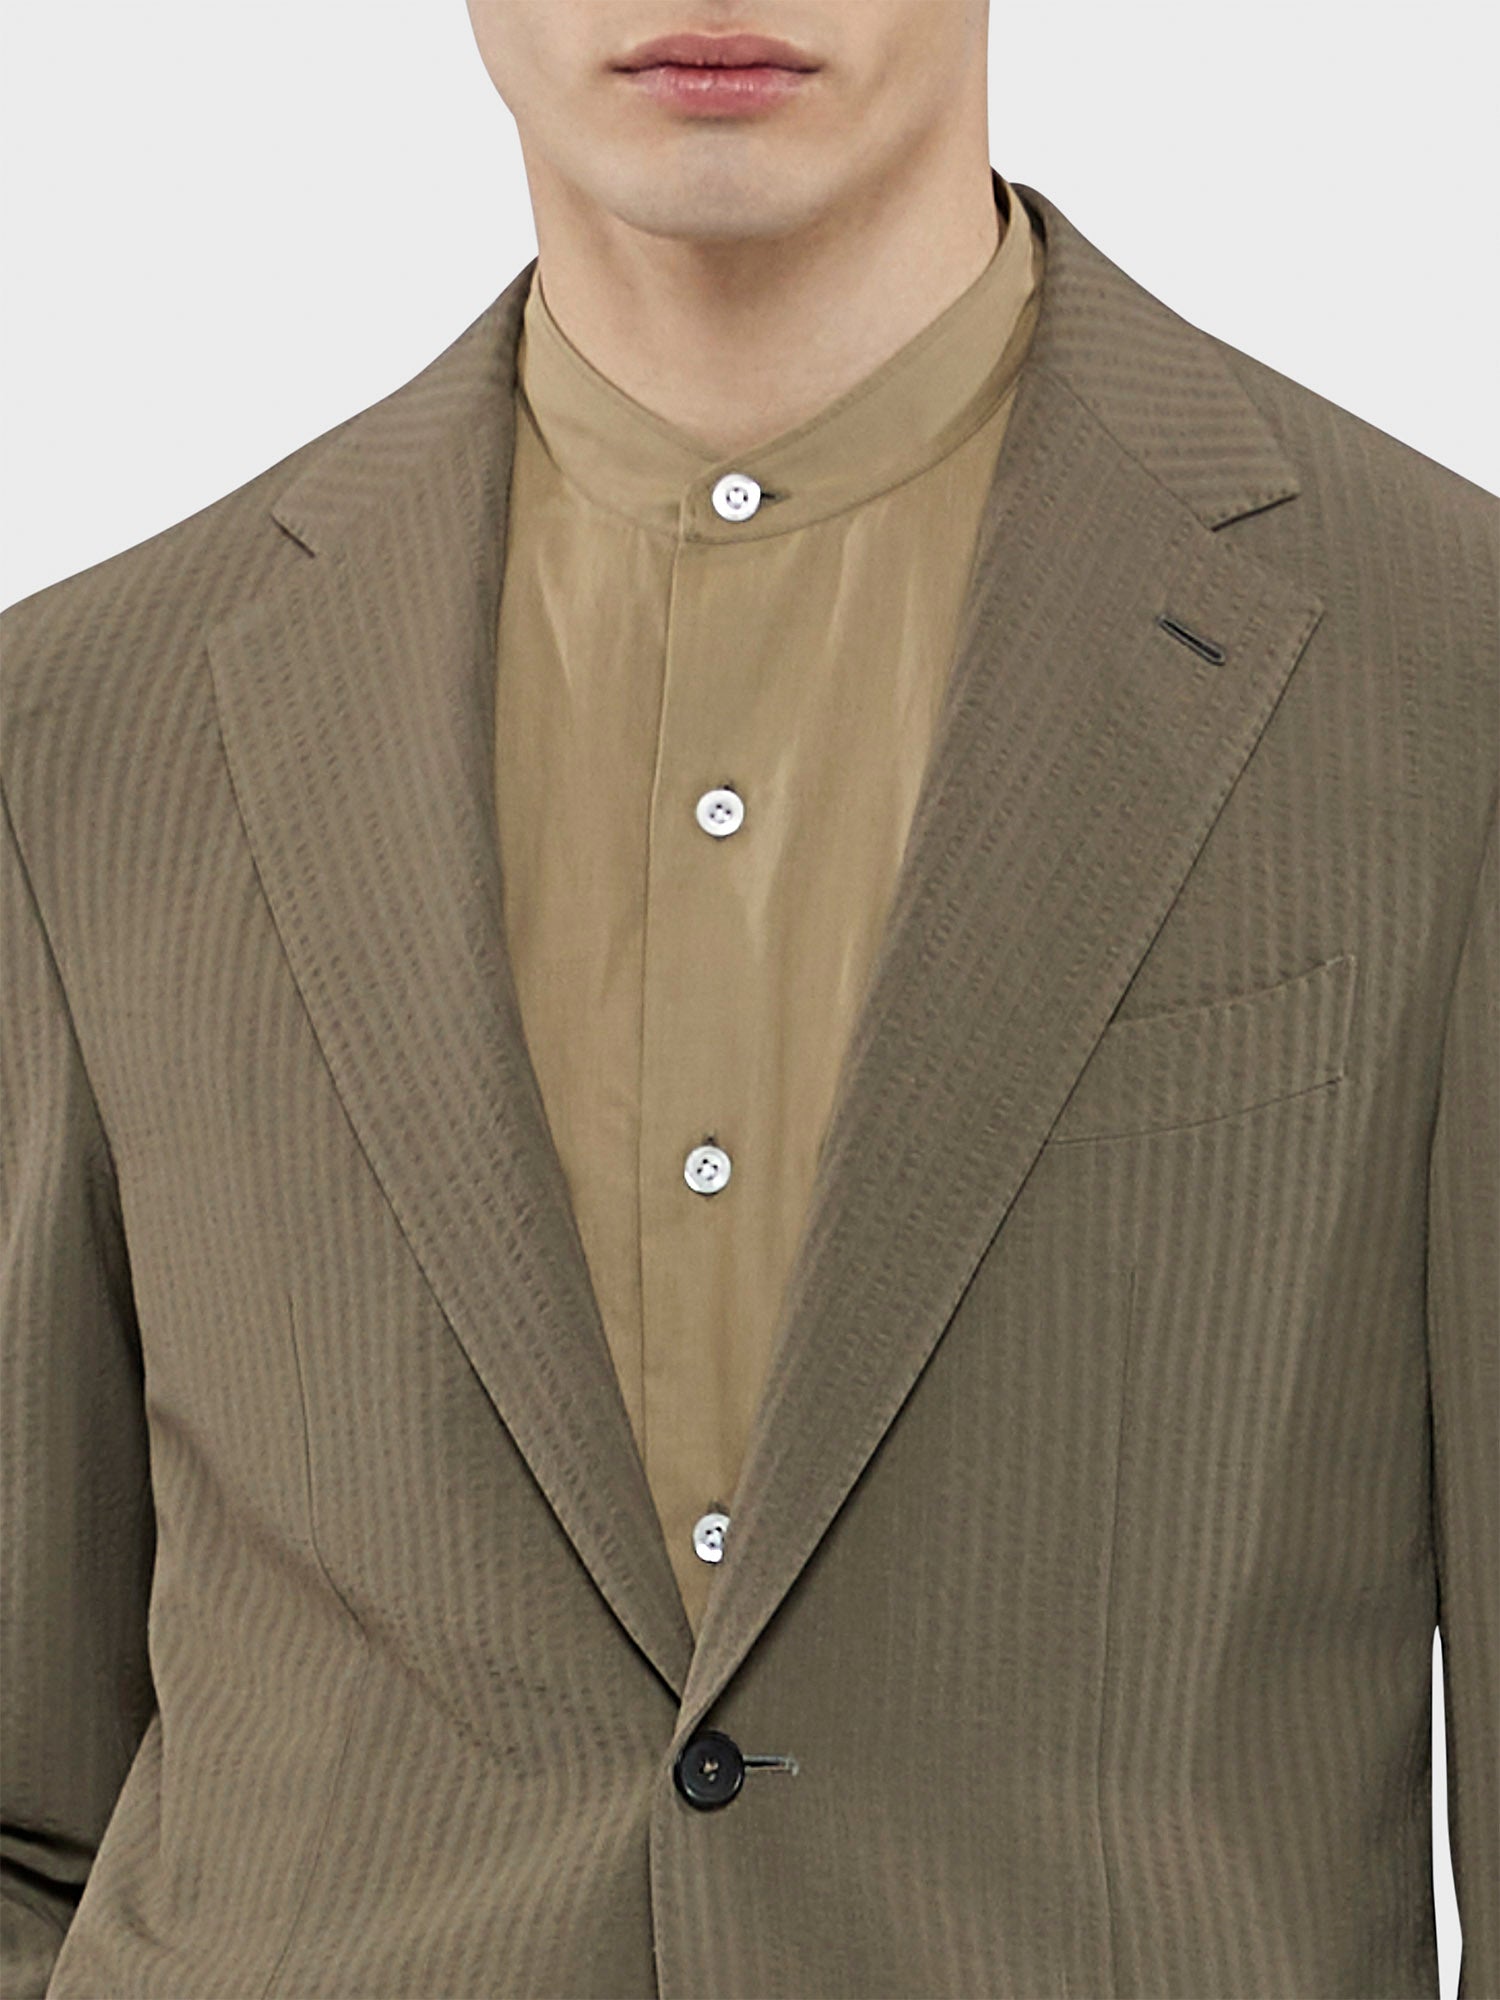 Caruso Menswear Abbigliamento Uomo Abito Aida in Seersucker di lana verde militare drop 8R dettaglio giacca